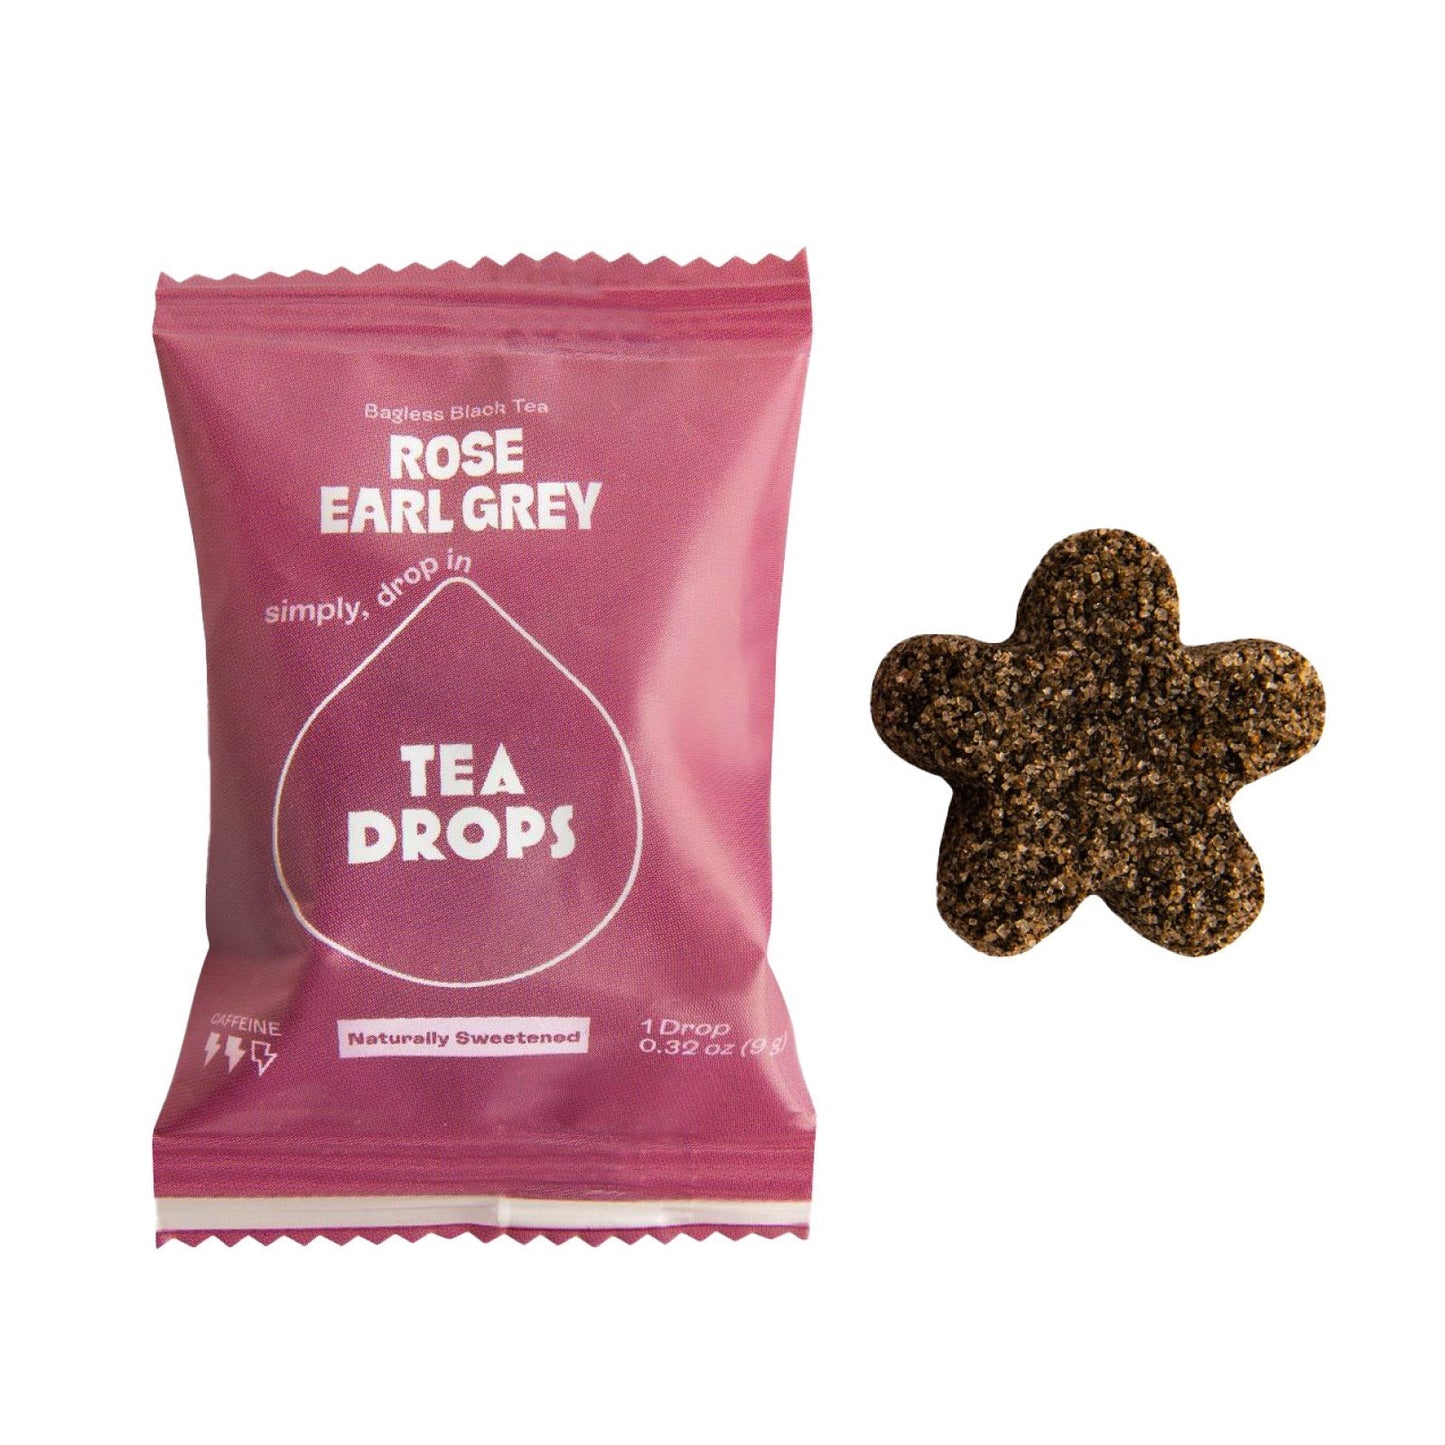 Rose Earl Grey Tea